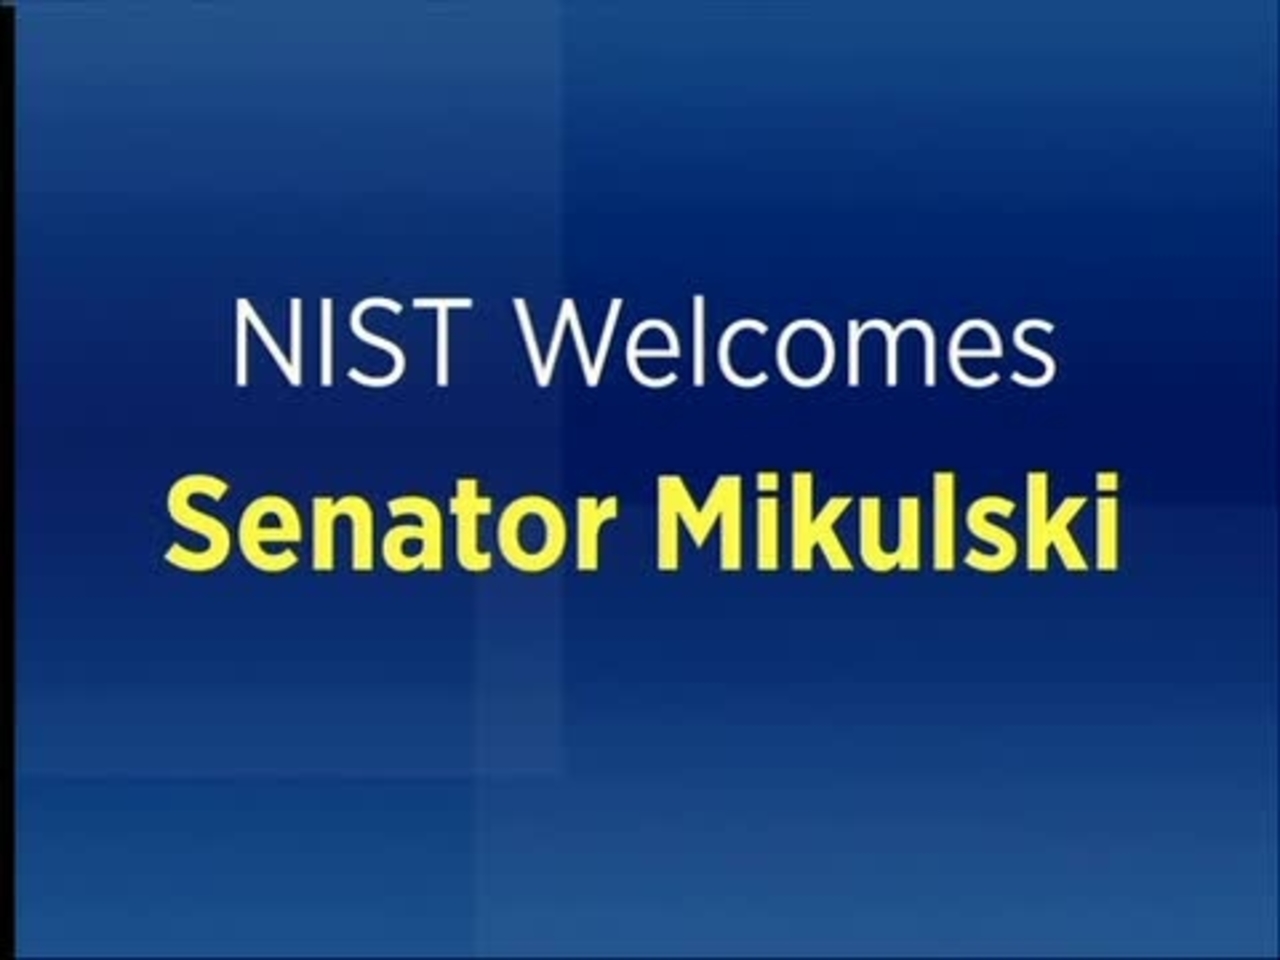 Senator Mikulski